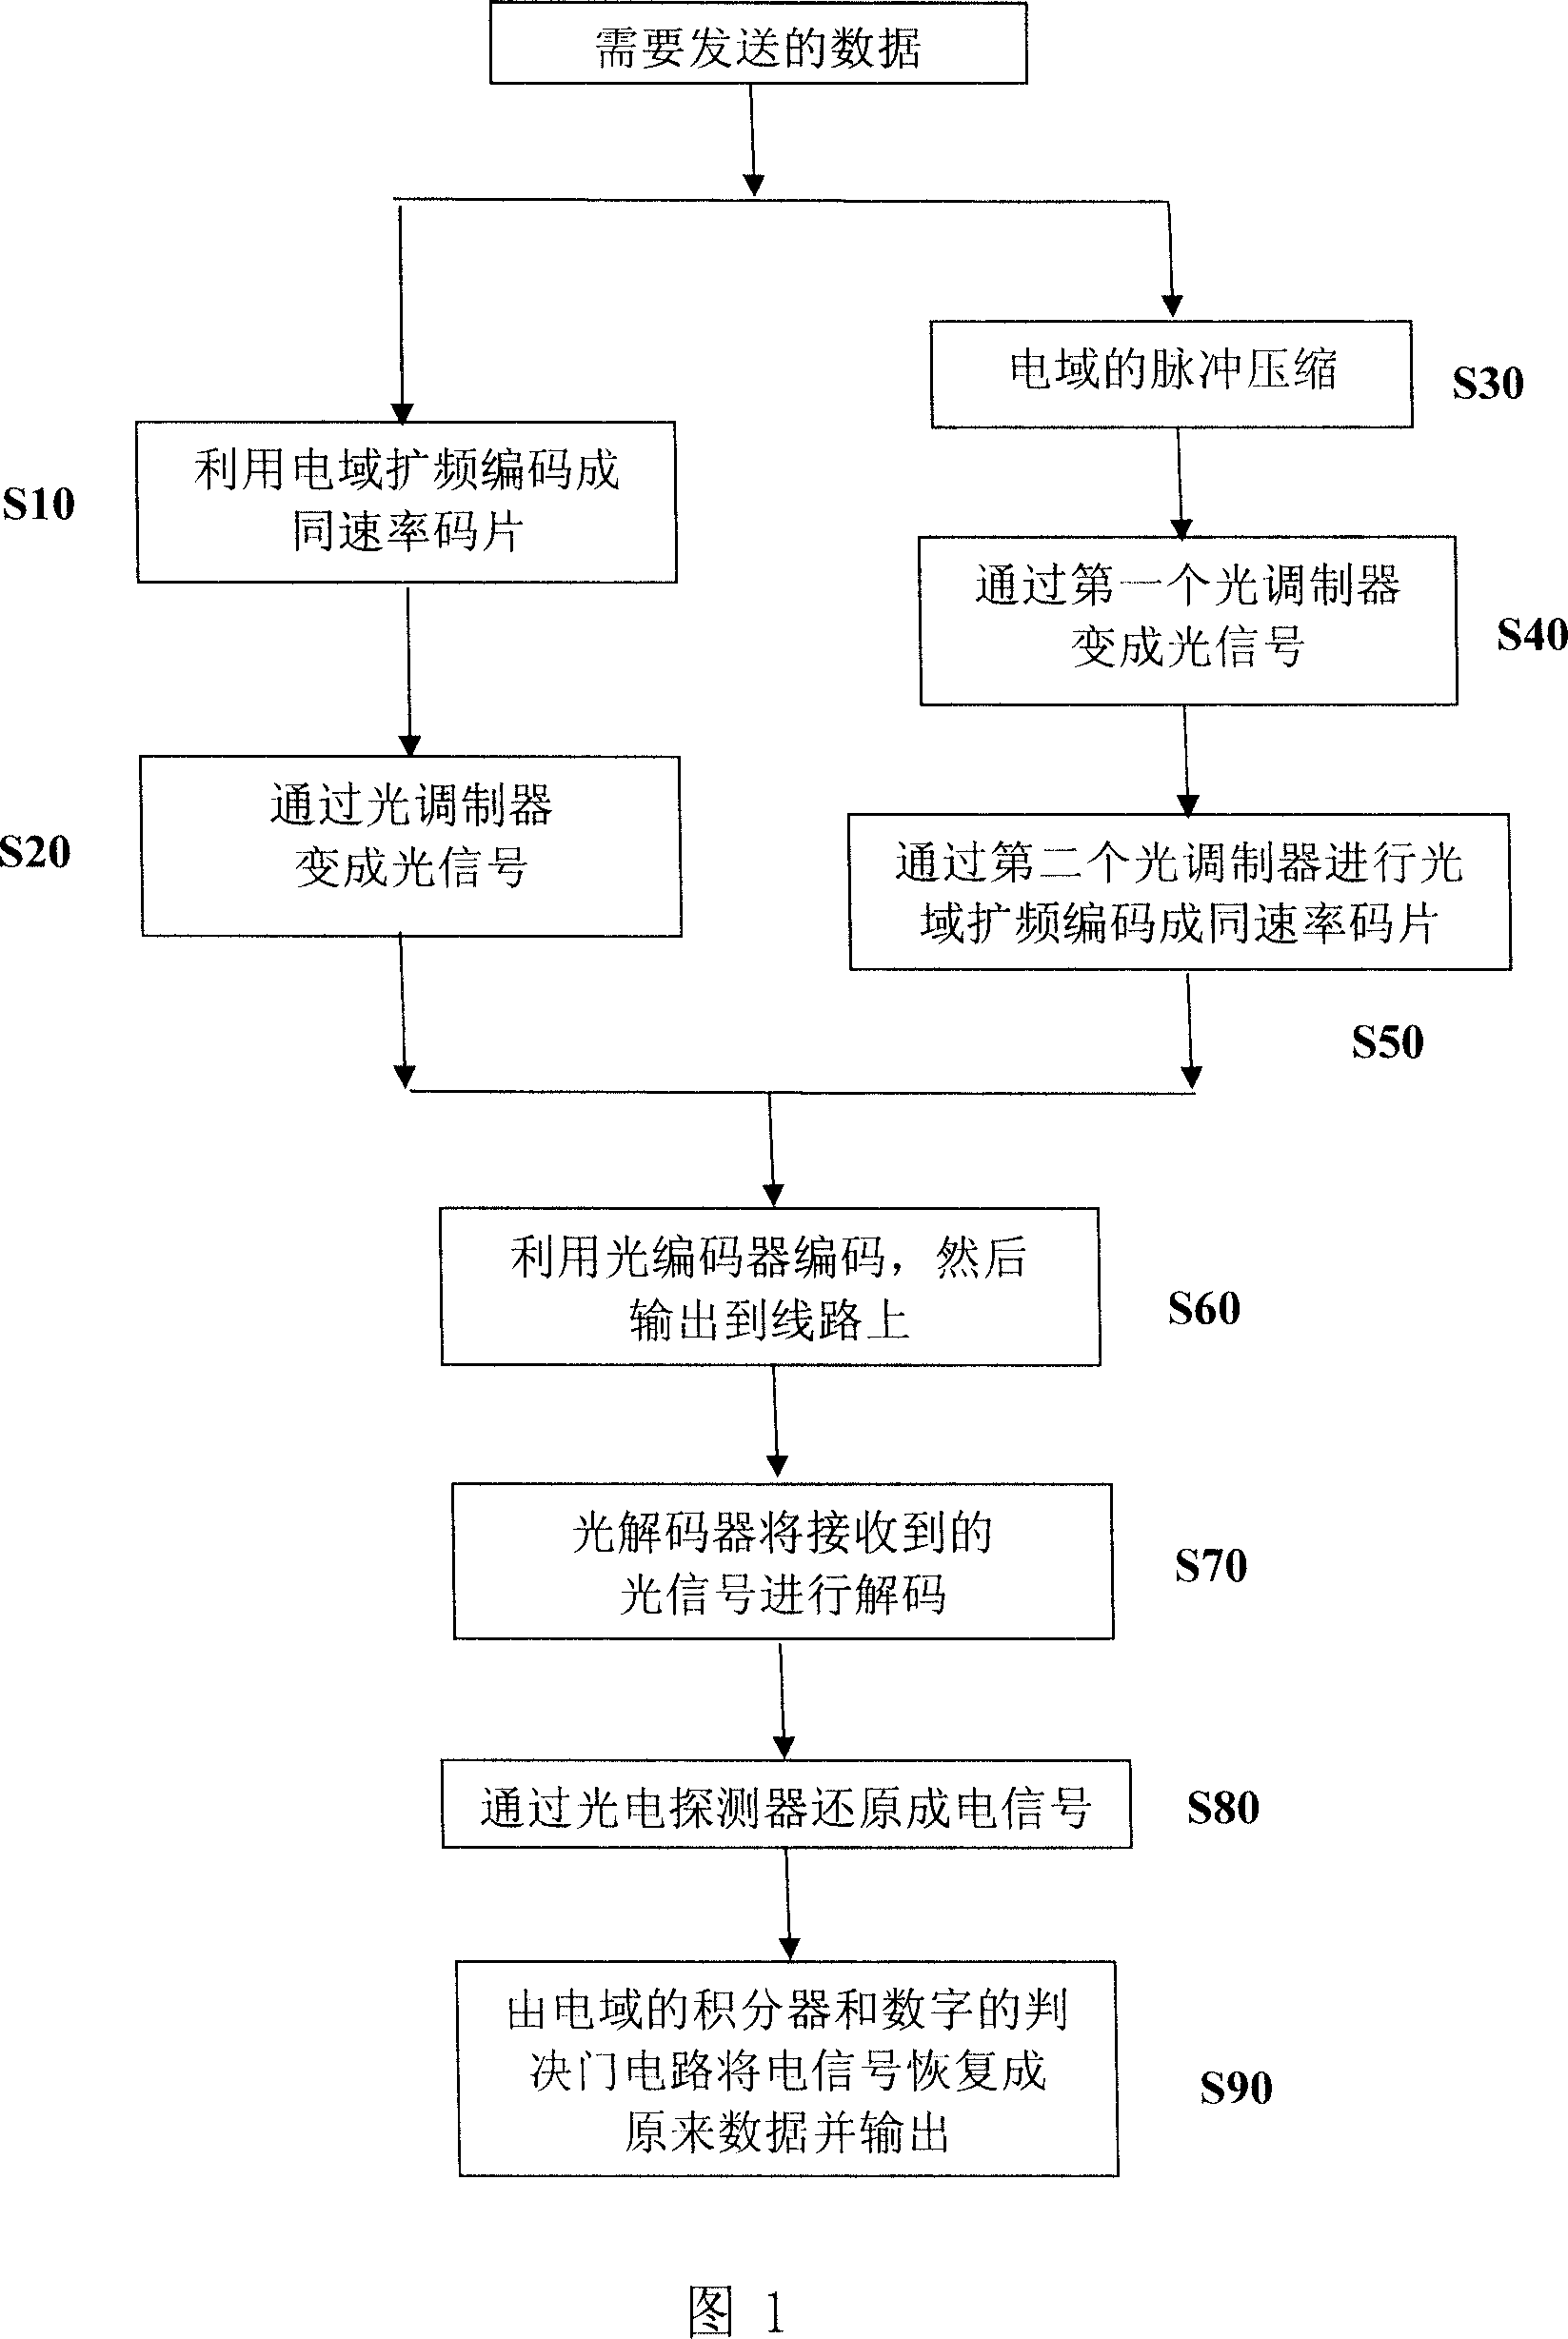 Data transmitting method utilizing optical code division multiple access technique